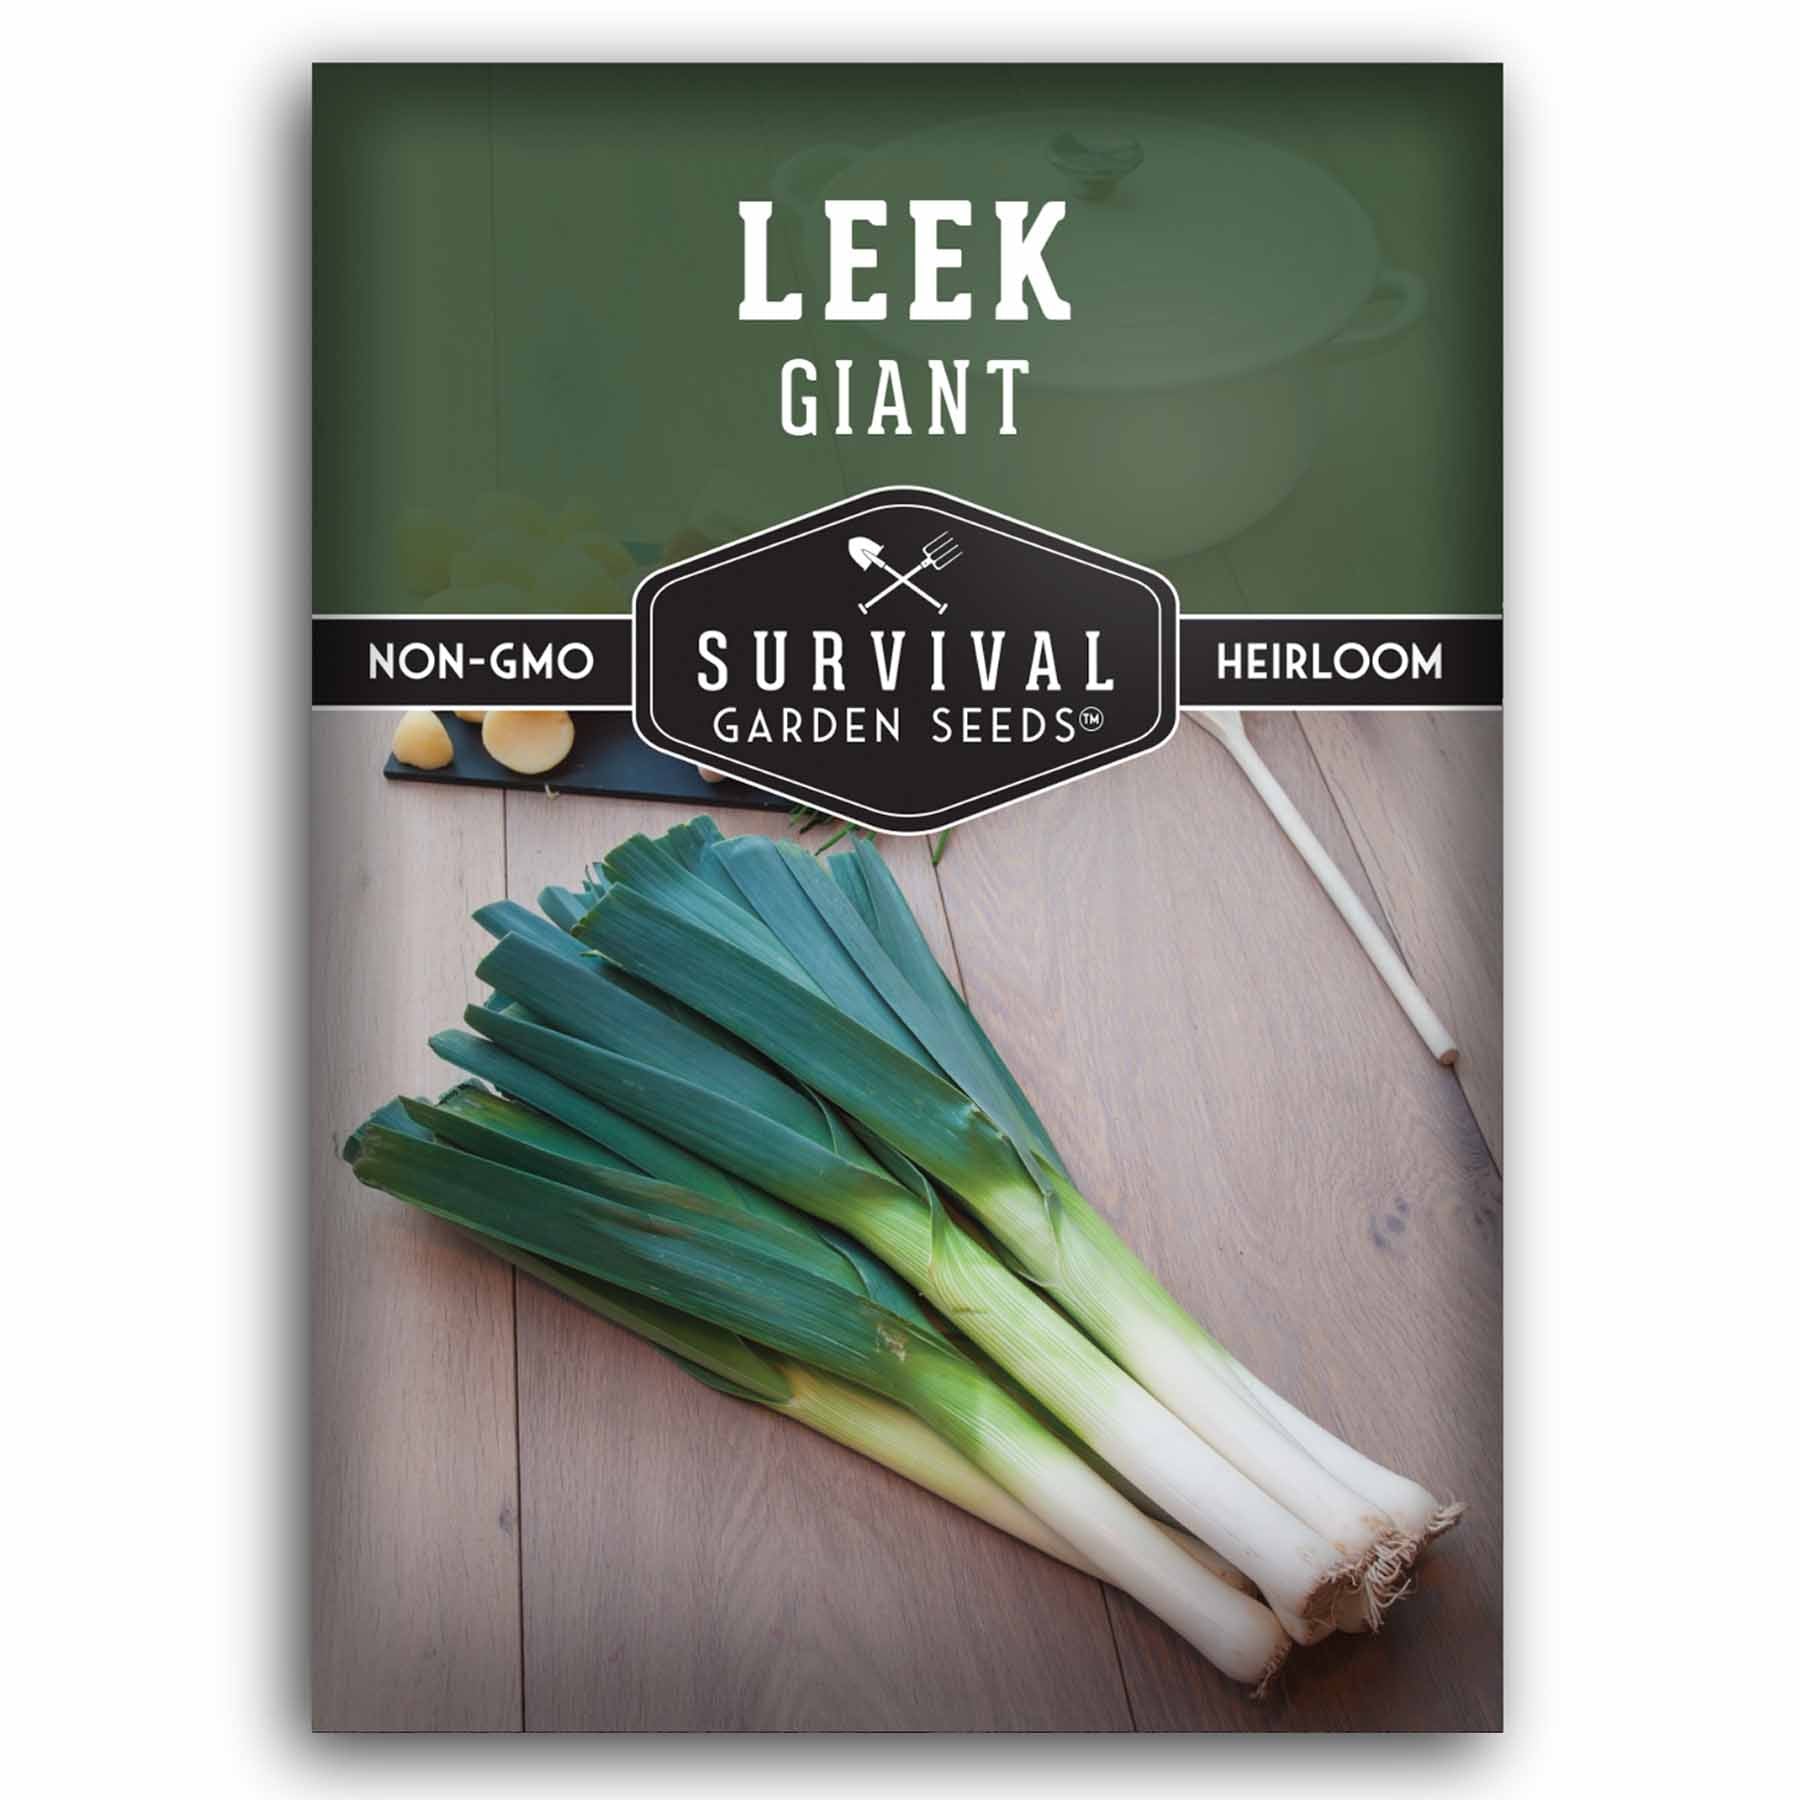 1 packet of Giant Leek seeds